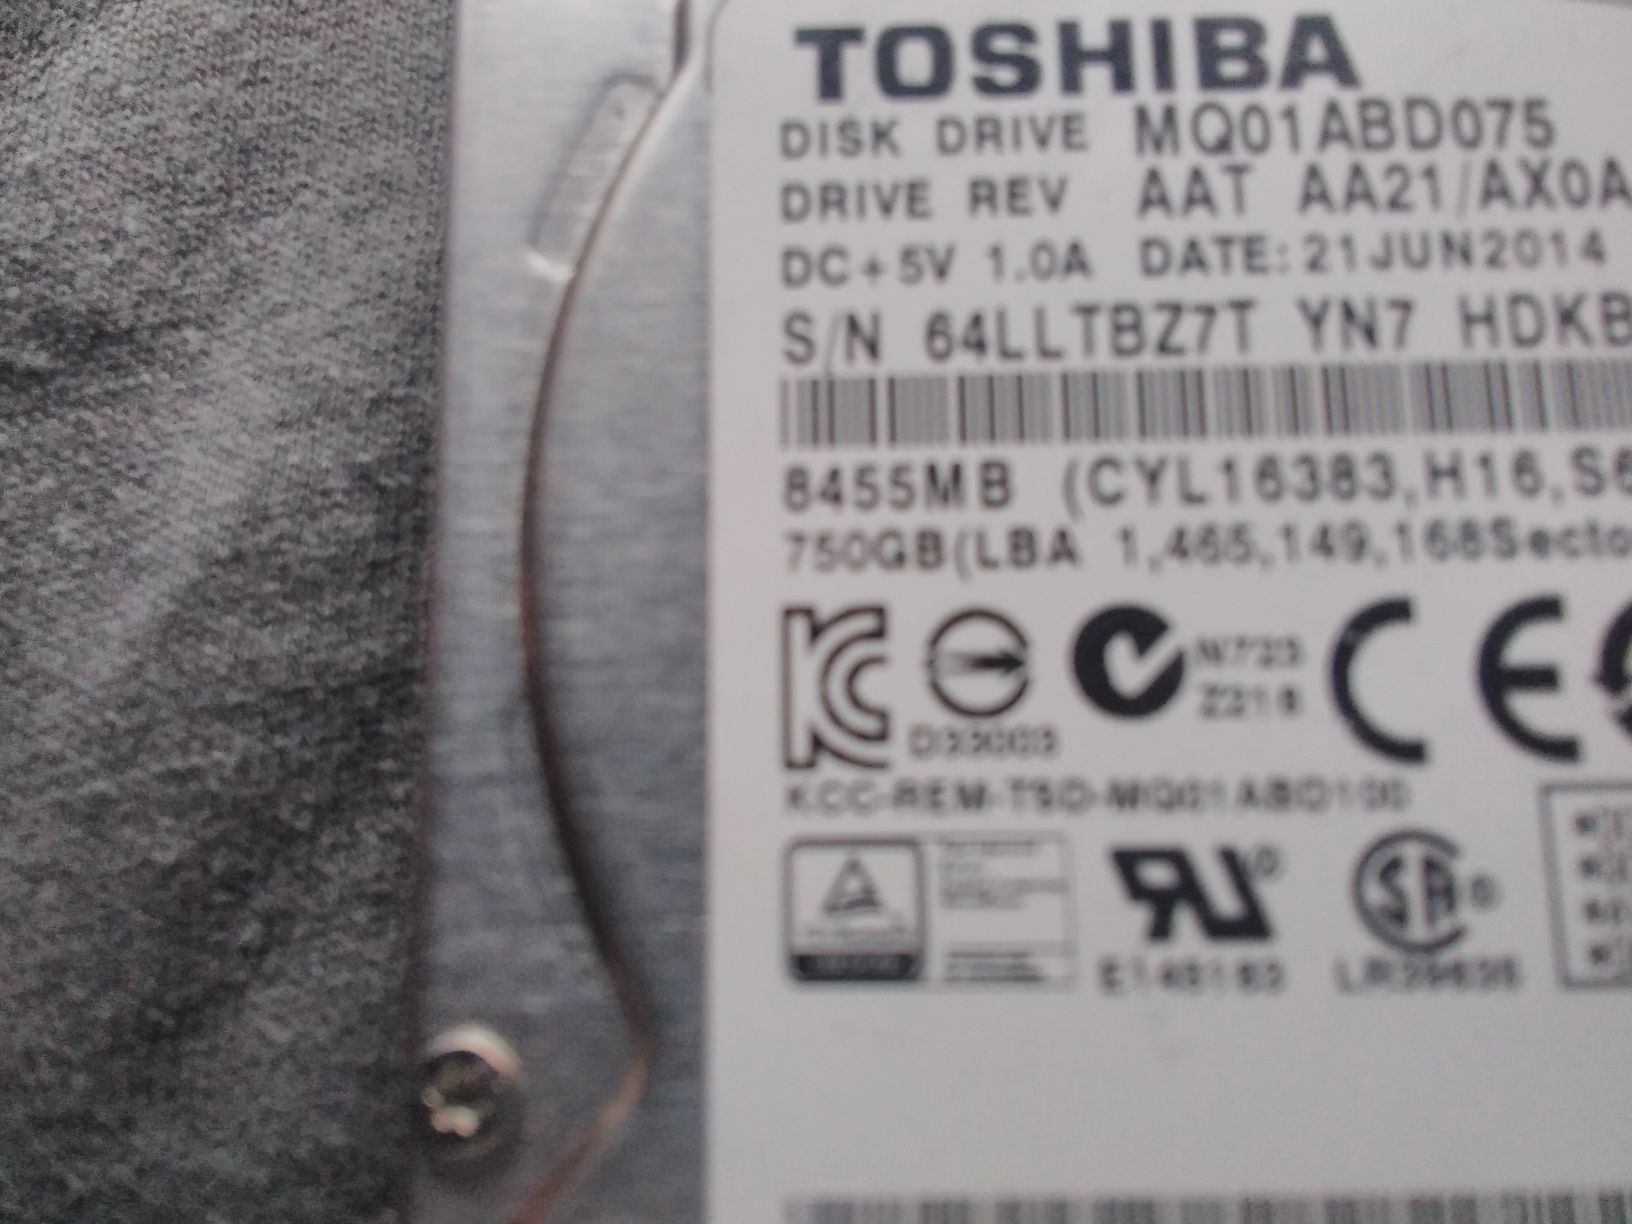 оригинален хард диск за лаптопи Тошиба 750GB-перфектен